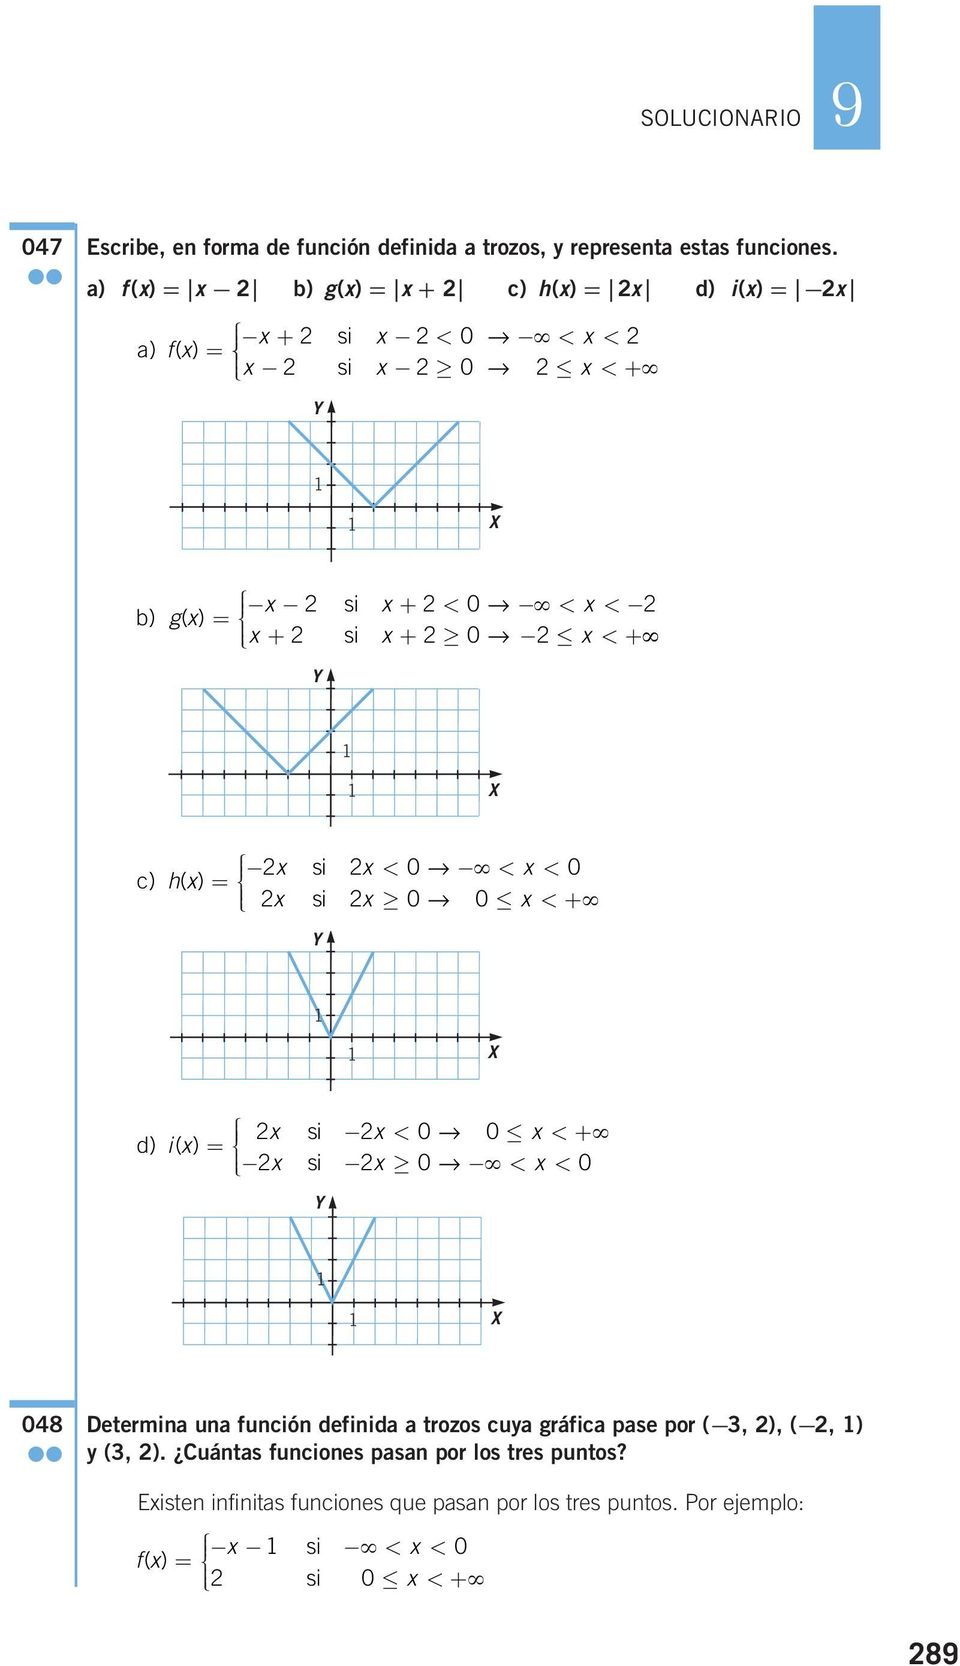 c) x si x x hx ()= < 0 < < 0 x si x 0 0 x < + d) x si x x ix ()= < 0 0 < + x si x 0 < x < 0 048 Determina una función definida a trozos cuya